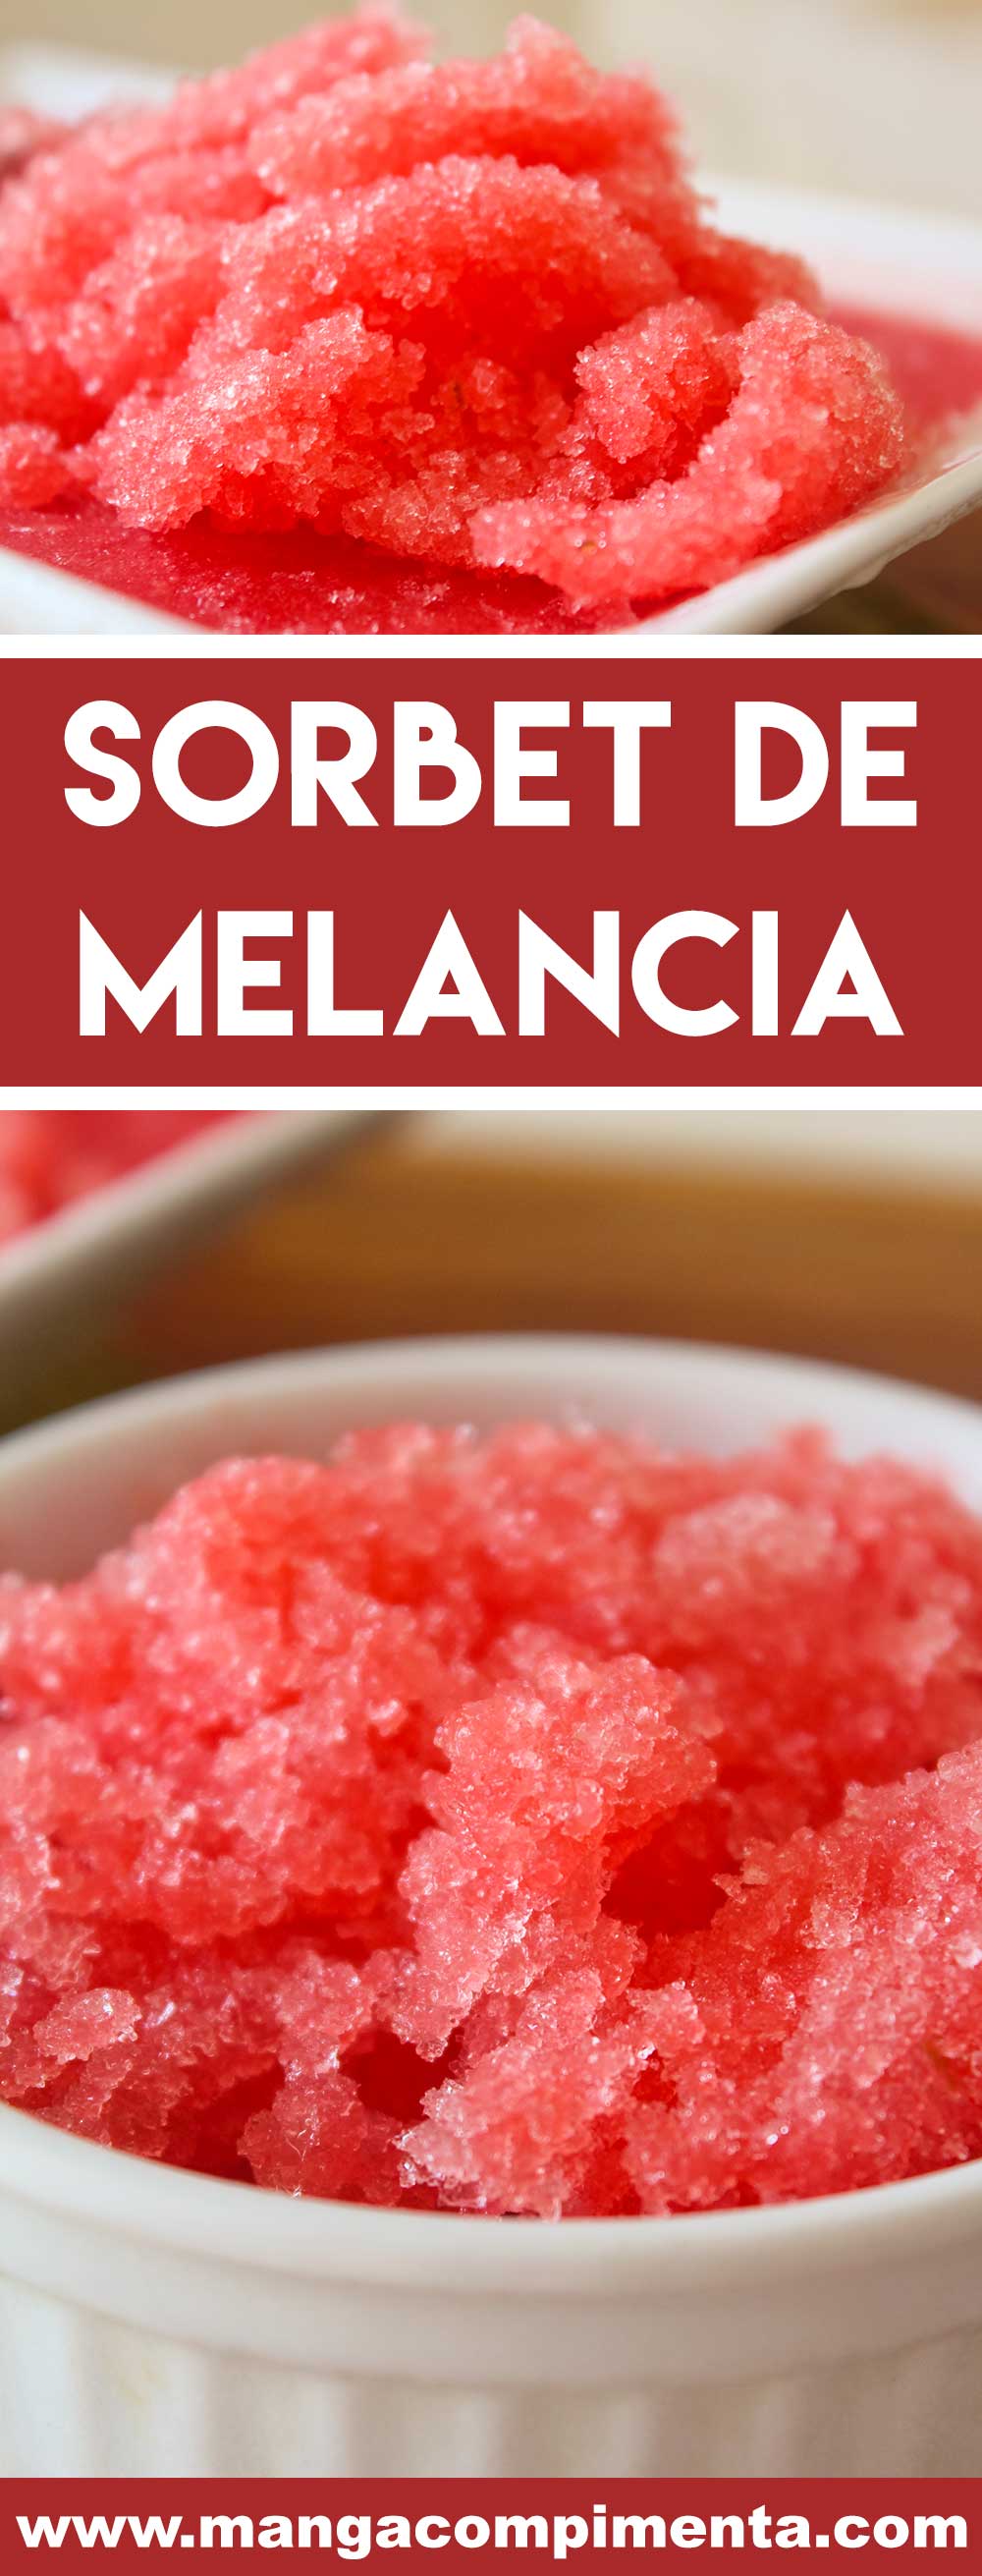 Sorbet de Melancia - uma sobremesa para refrescar em dias quentes de verão.